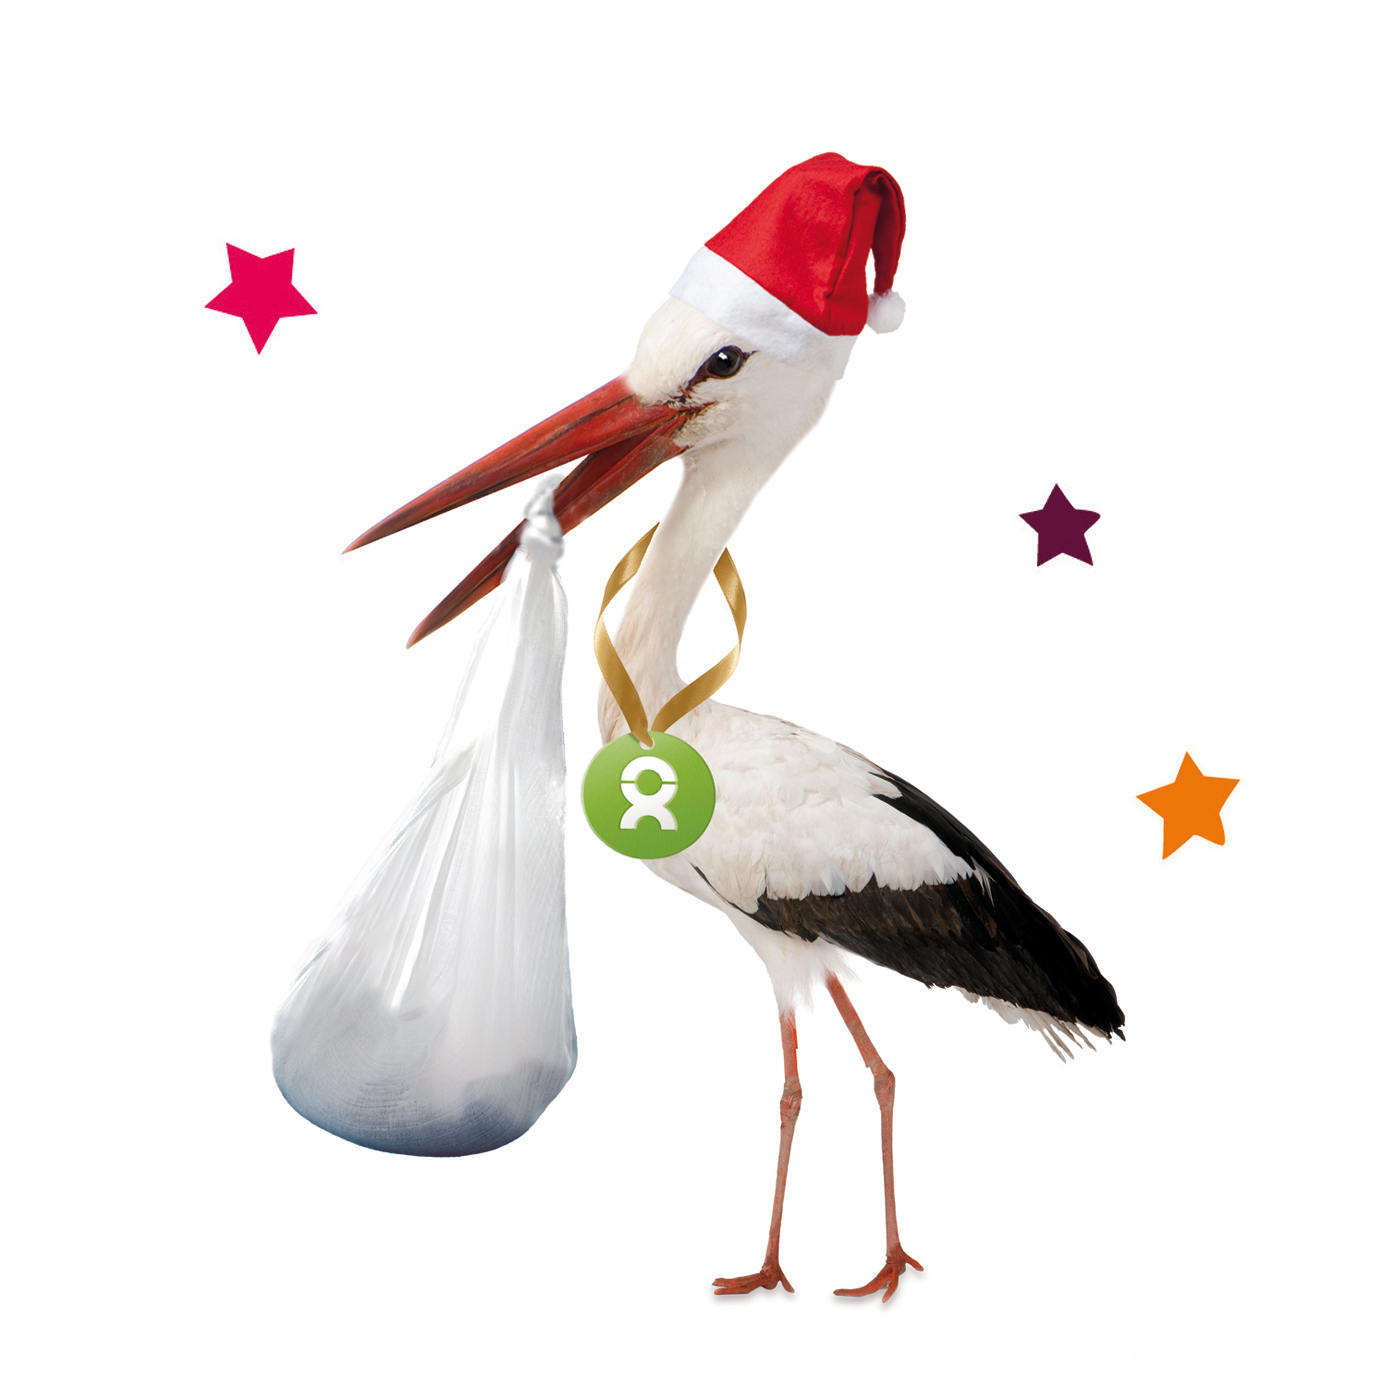 Beispiel Geschenk Spende Sichere Geburt zu Weihnachten: Grafik von einem Storch, der einen Beutel mit wichtigen medizinischen Artikeln für eine sichere Geburt im Schnalbel trägt